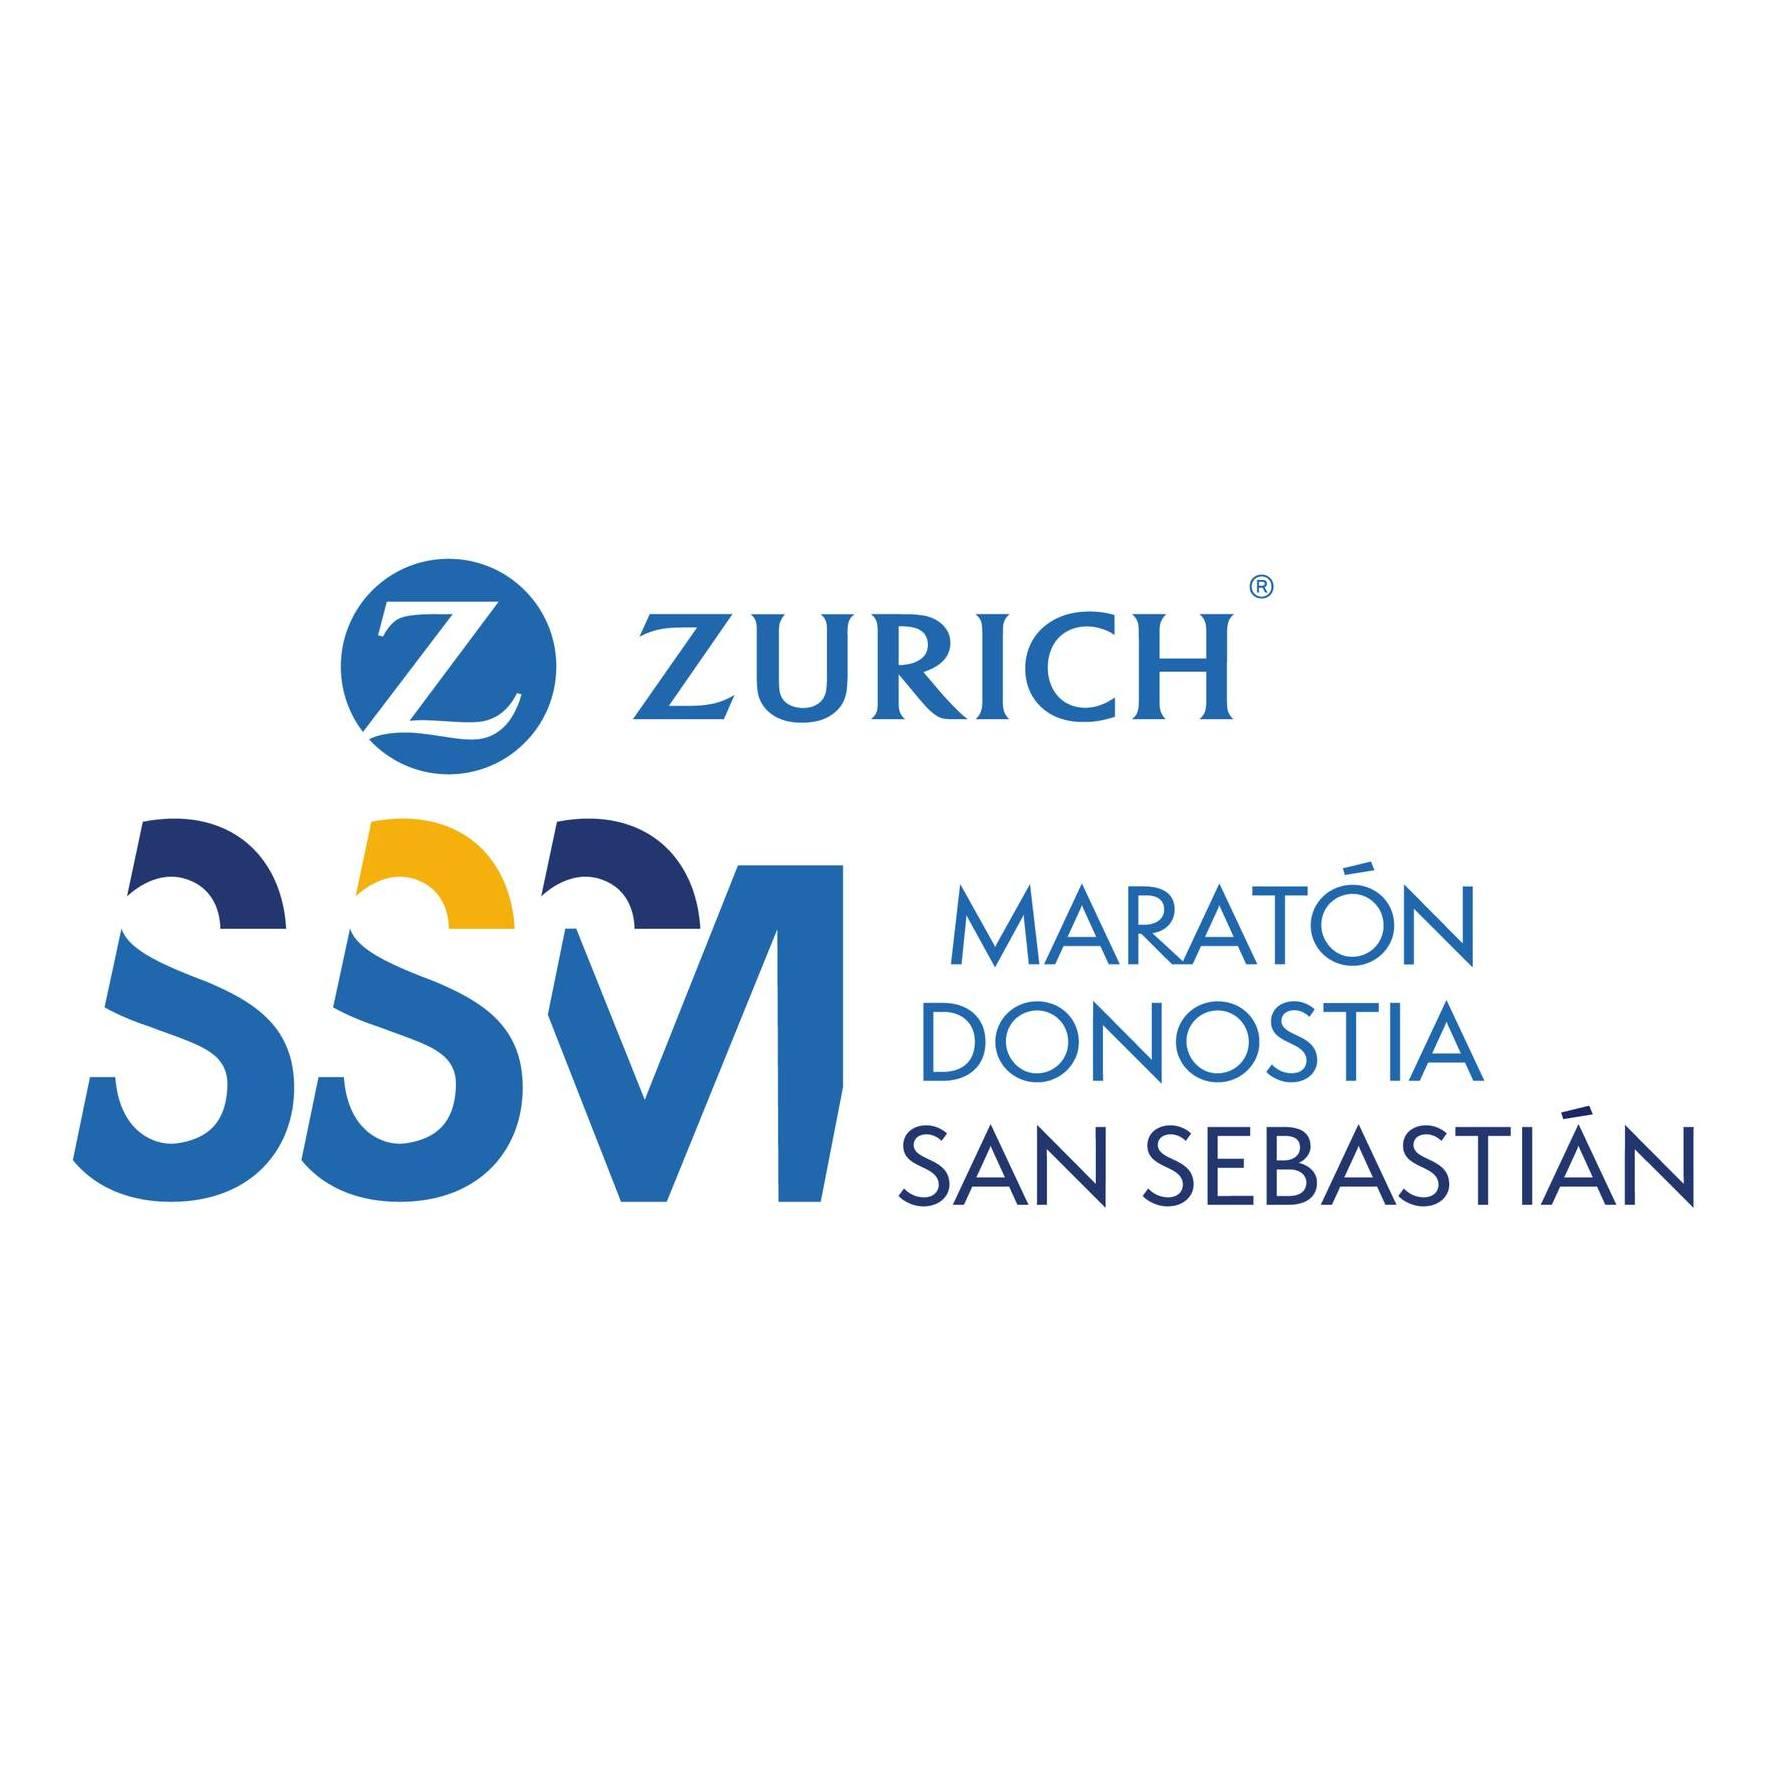 Zurich Maratón San Sebastián